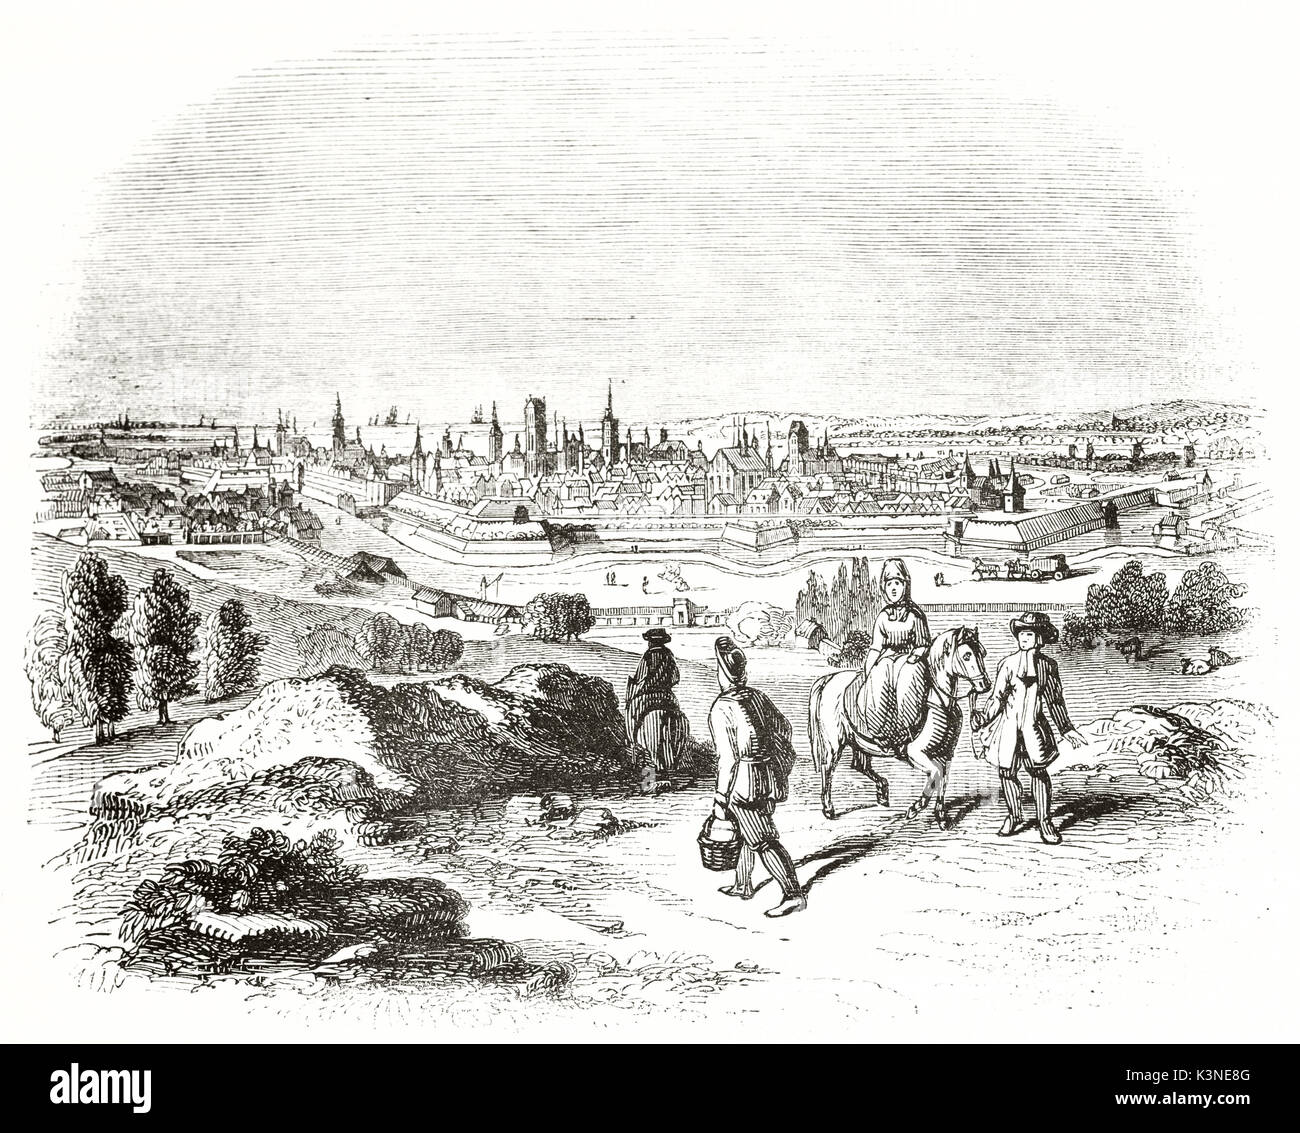 Alte Stadtbild von Gdansk (Danzig), Polen, gesehen von der Spitze eines Hügels. Manche Menschen gehen in Richtung auf die Stadt in der Ferne. Von unbekannter Autor, Magasin Pittoresque Paris 1839 Stockfoto